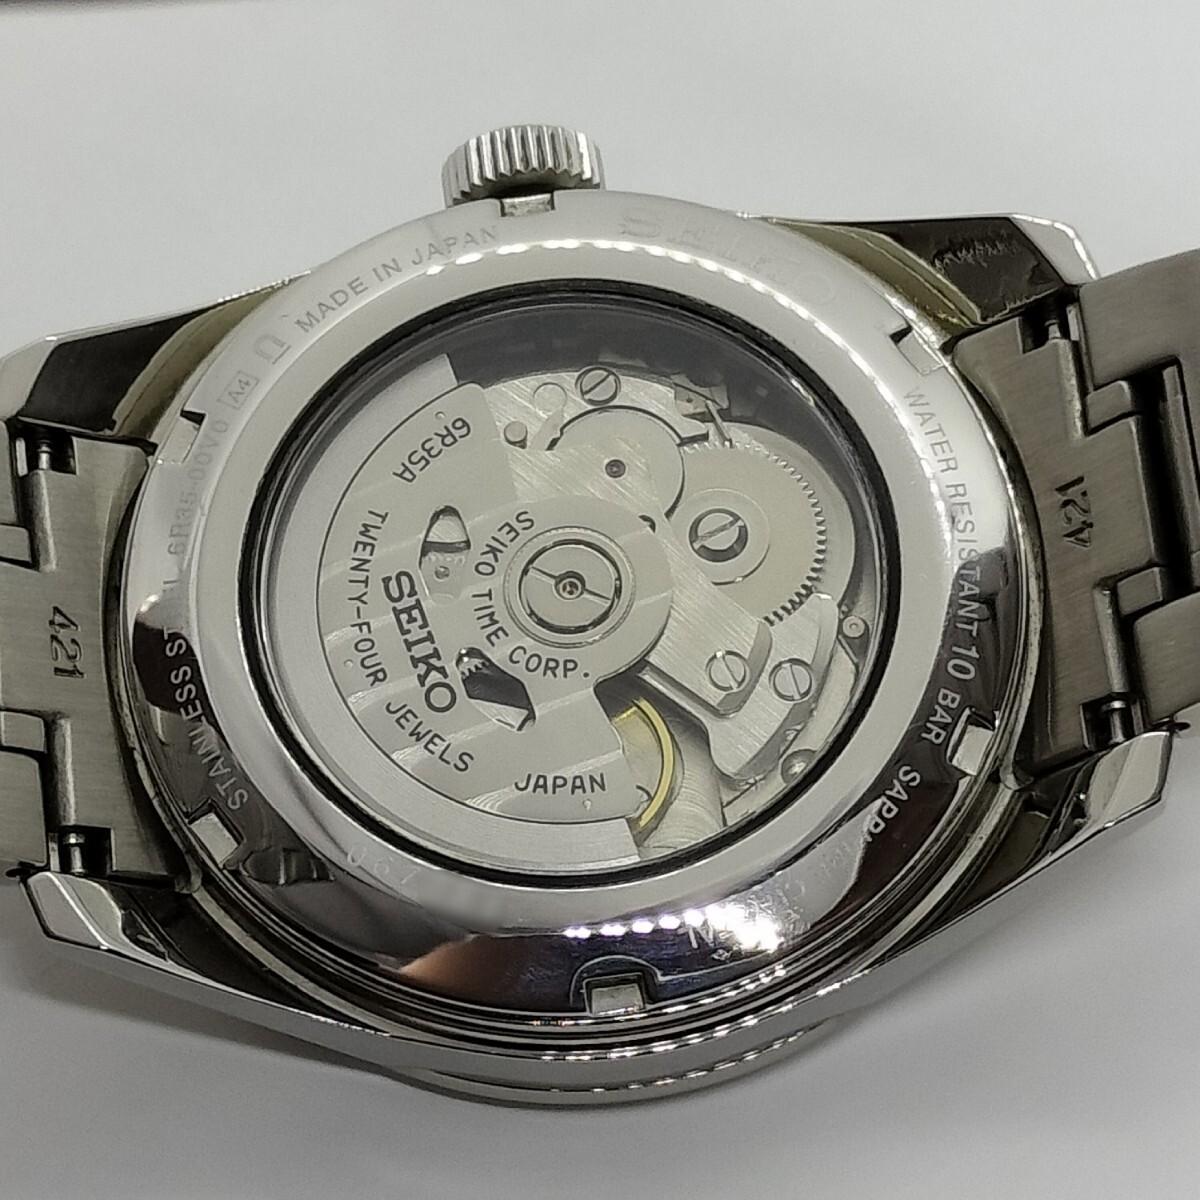 【美品】SEIKOセイコーPRESAGEプレザージュSARX075白練 箱保付きメンズ腕時計